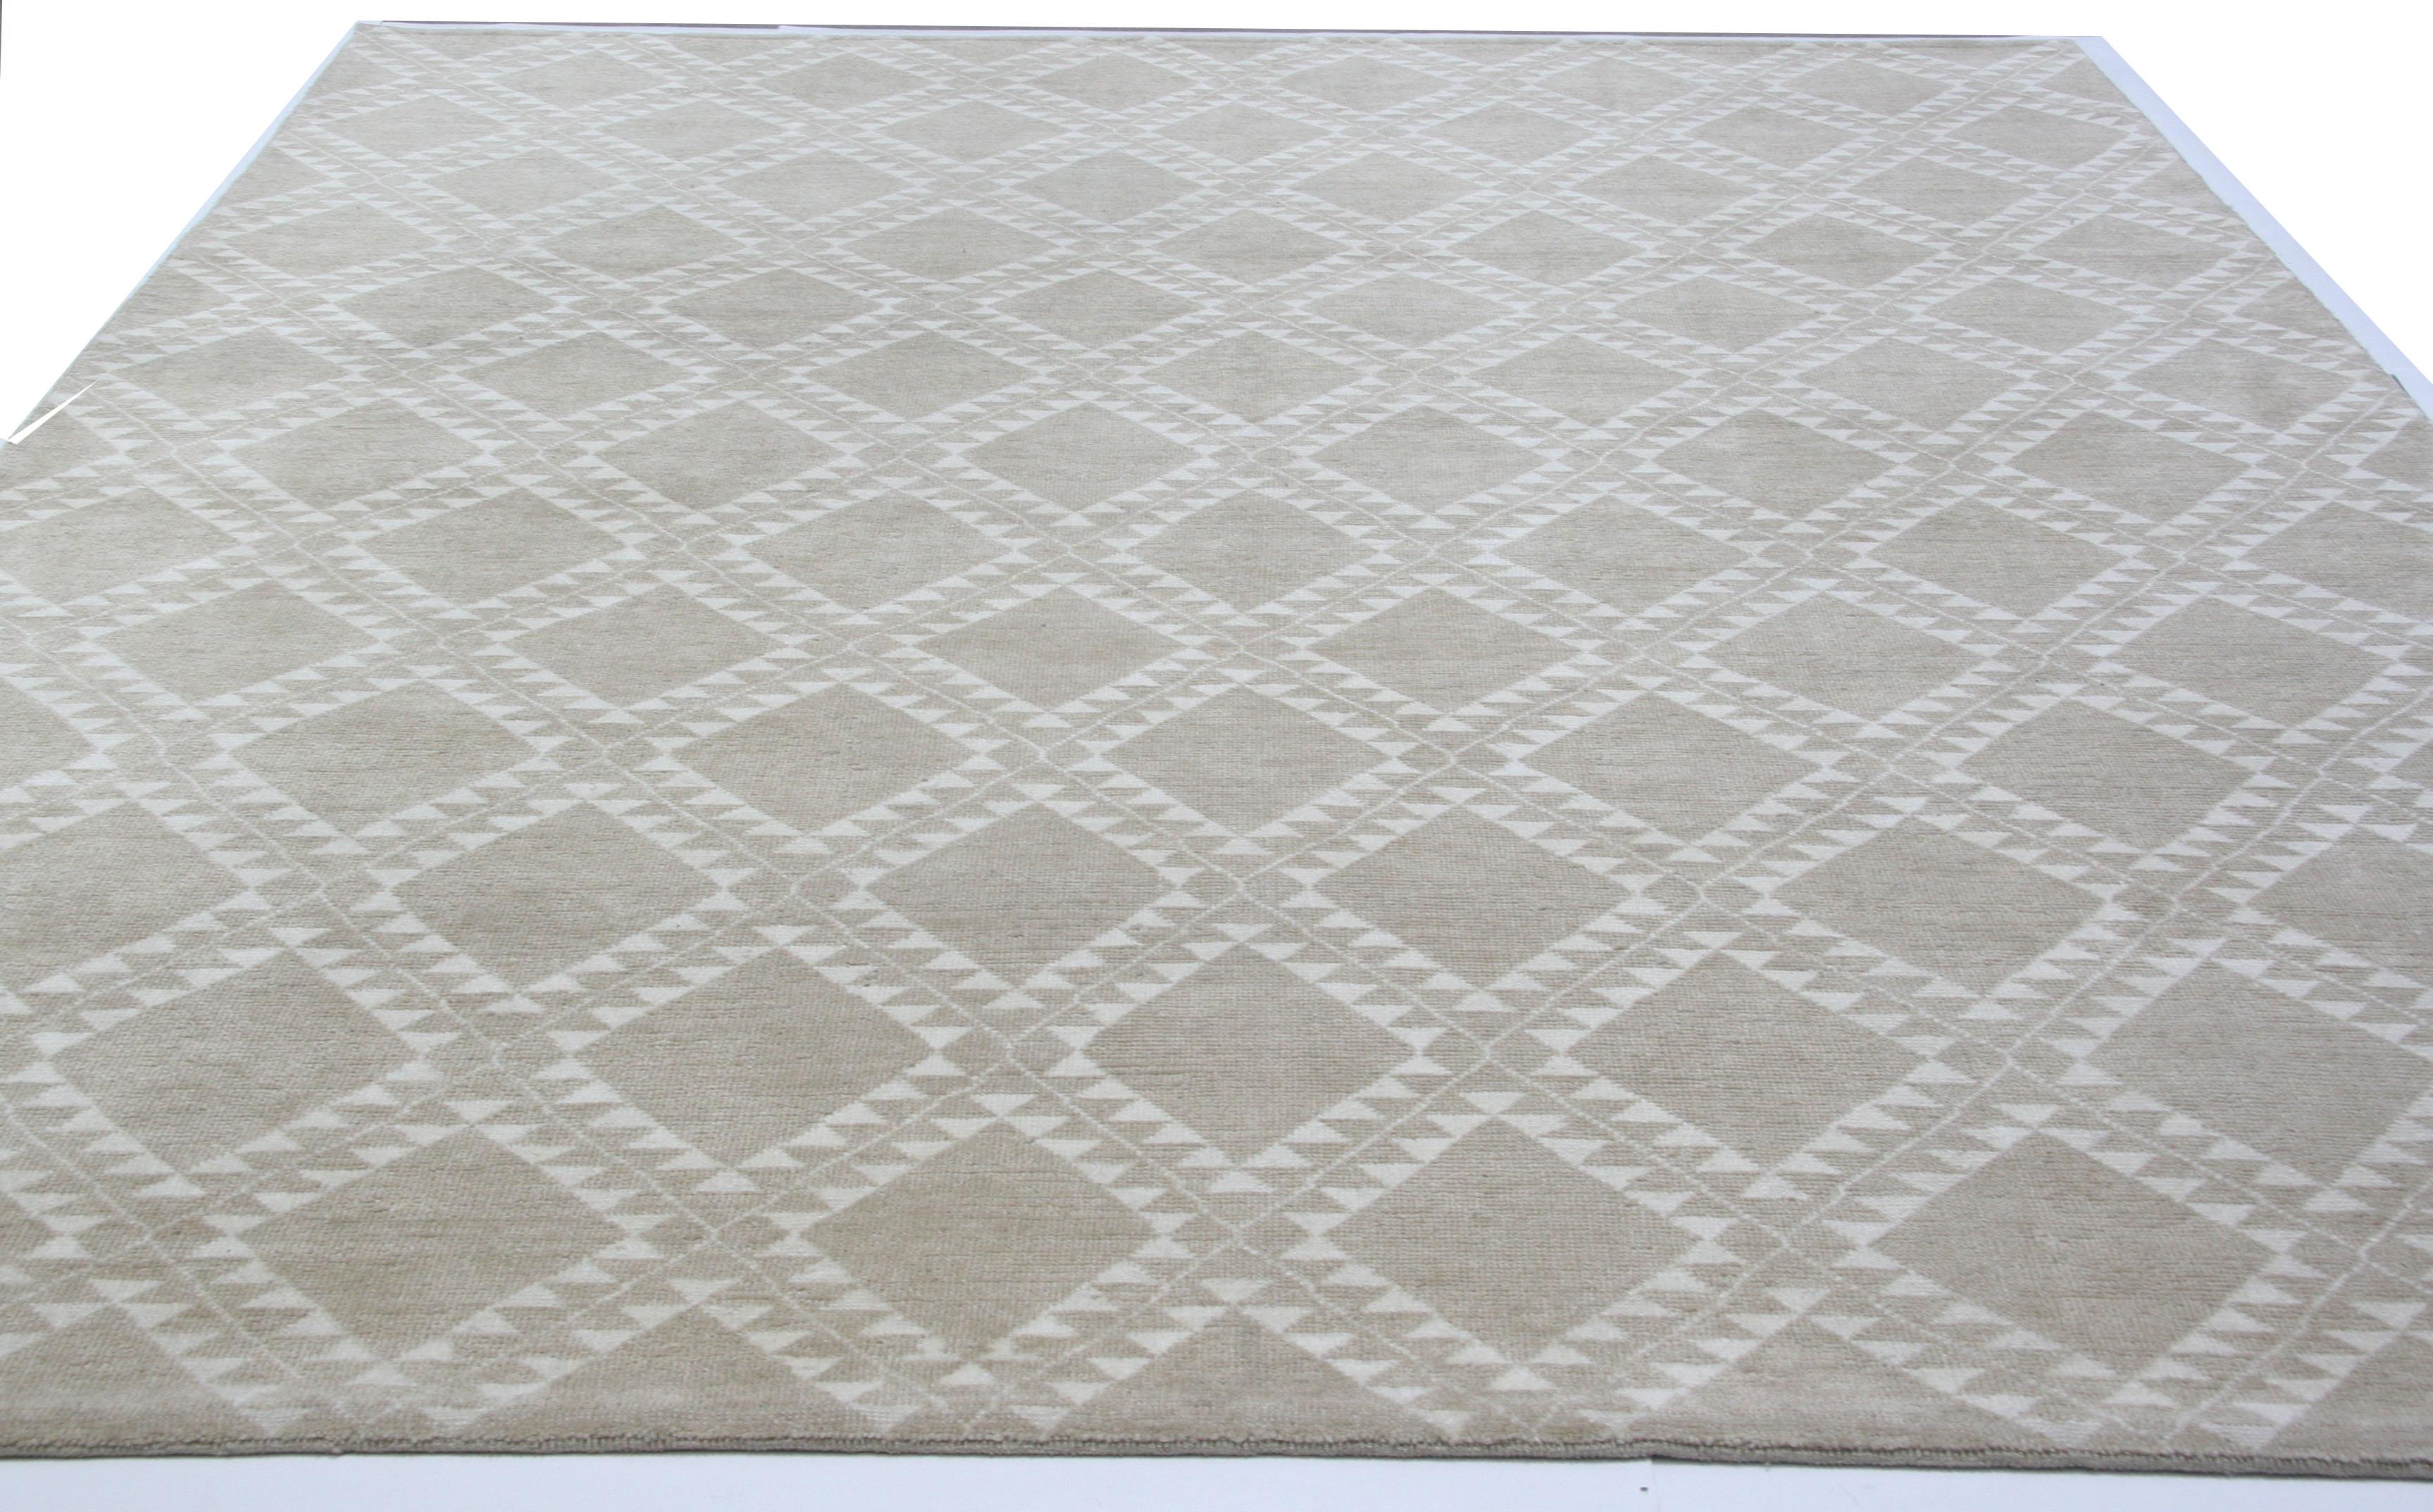 Taupefarbener Teppich mit Rautenmuster, handgeknüpft in Indien, basierend auf traditionellem marokkanischem Design. Die Konstruktion aus reiner Wolle mit dickem, niedrigem Flor macht ihn zu einem langlebigen, familienfreundlichen Teppich, der in